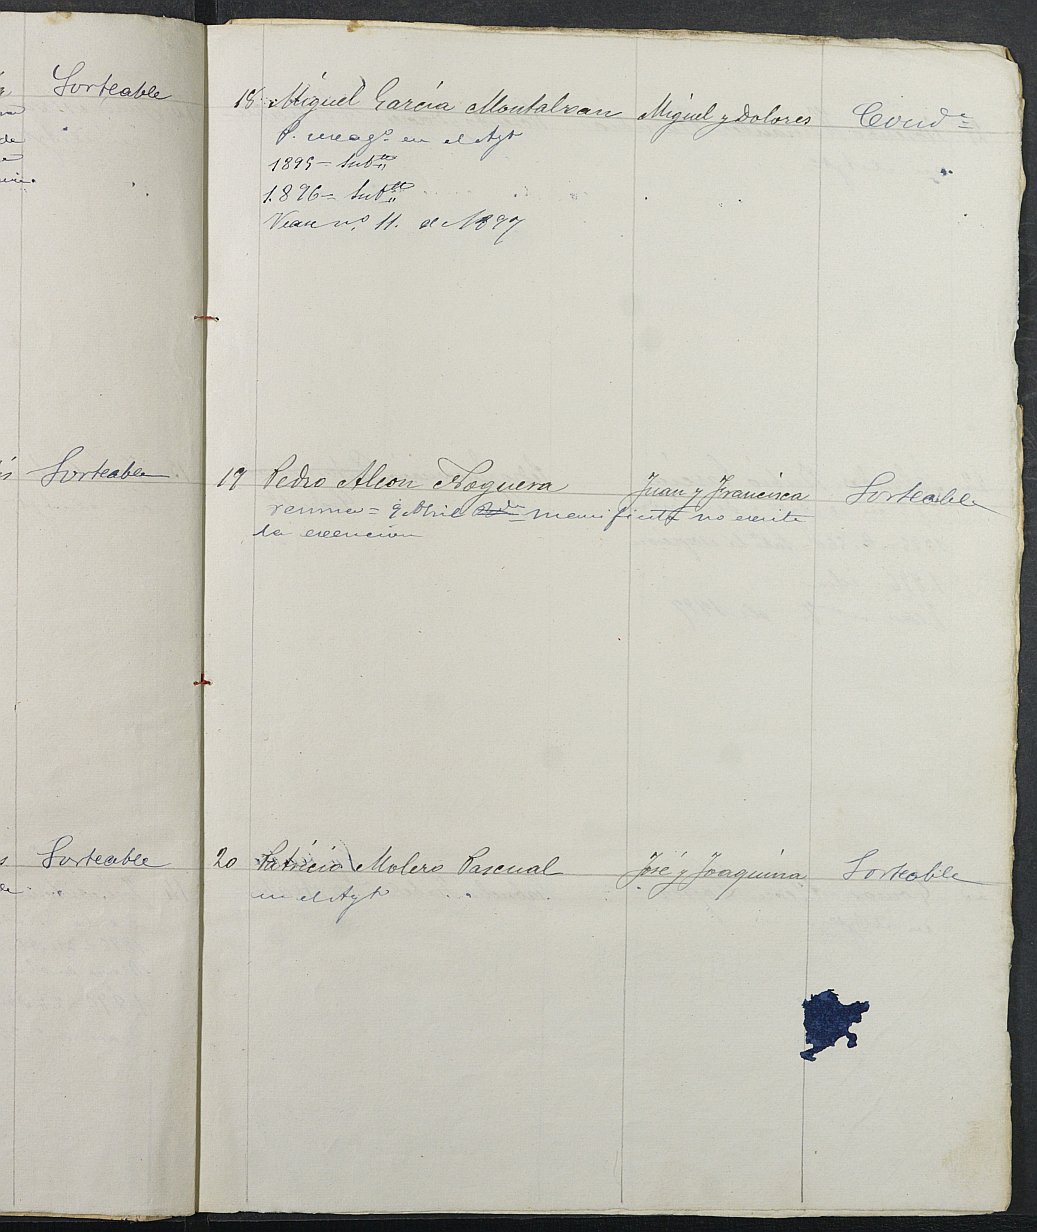 Relación de individuos declarados soldados e ingresados en Caja del Ayuntamiento de Librilla de 1894